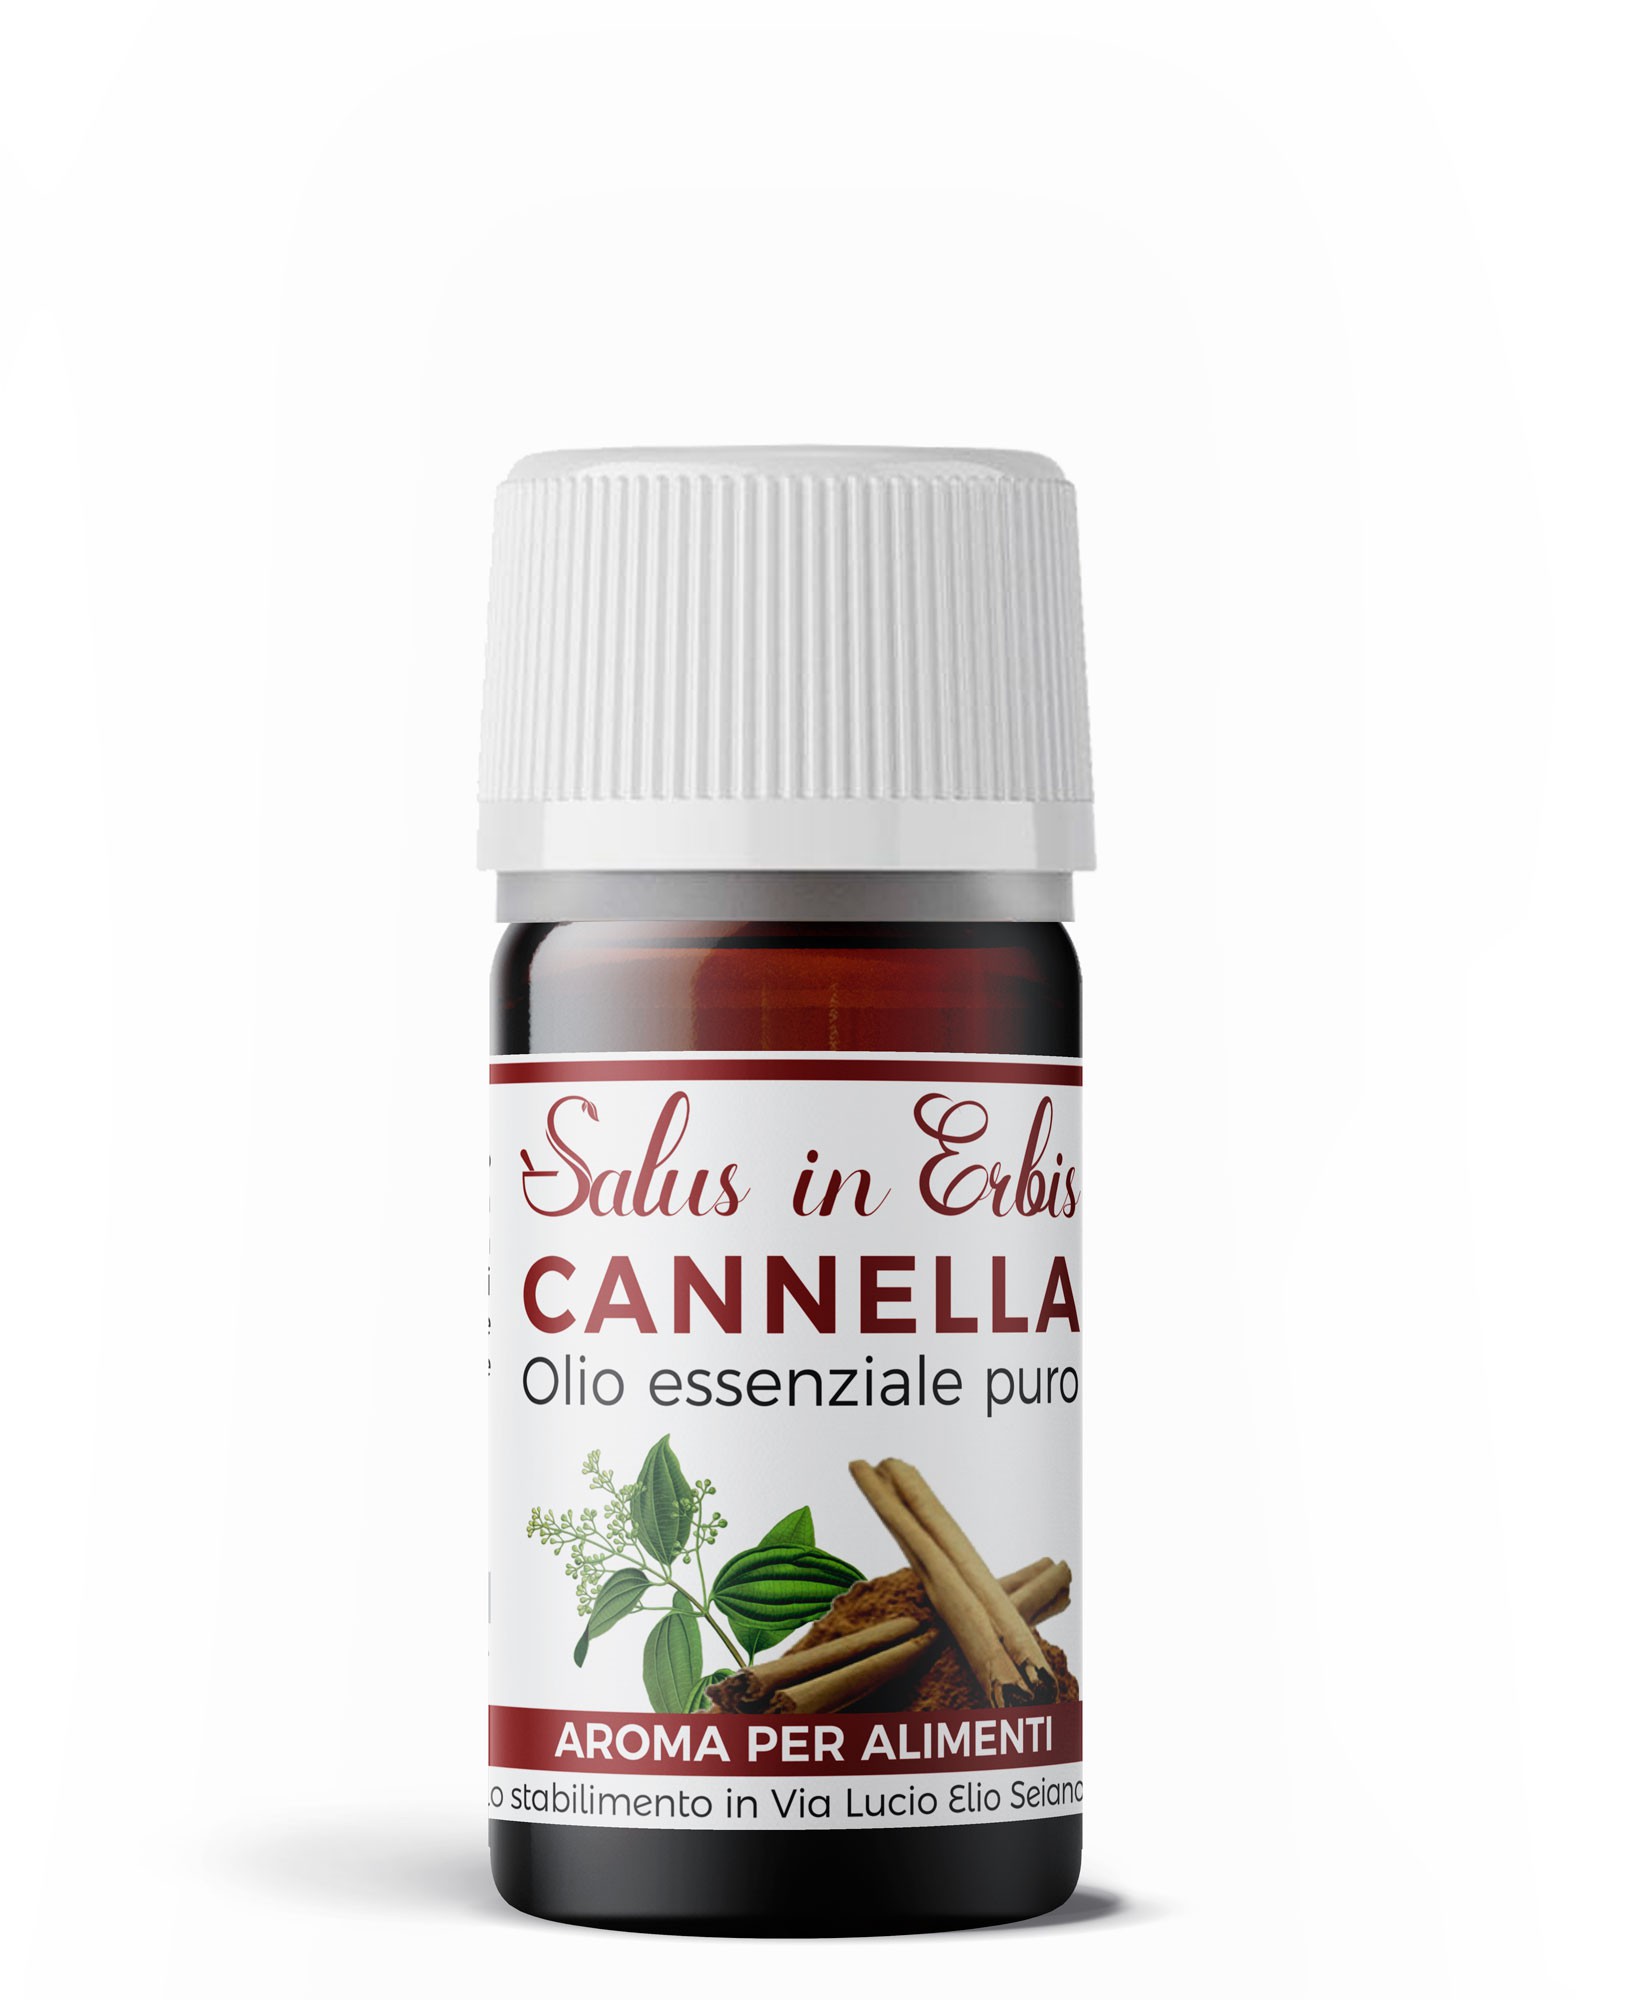 Olio Essenziale di Cannella Foglie - Energizzante - Erbe di Sardegna